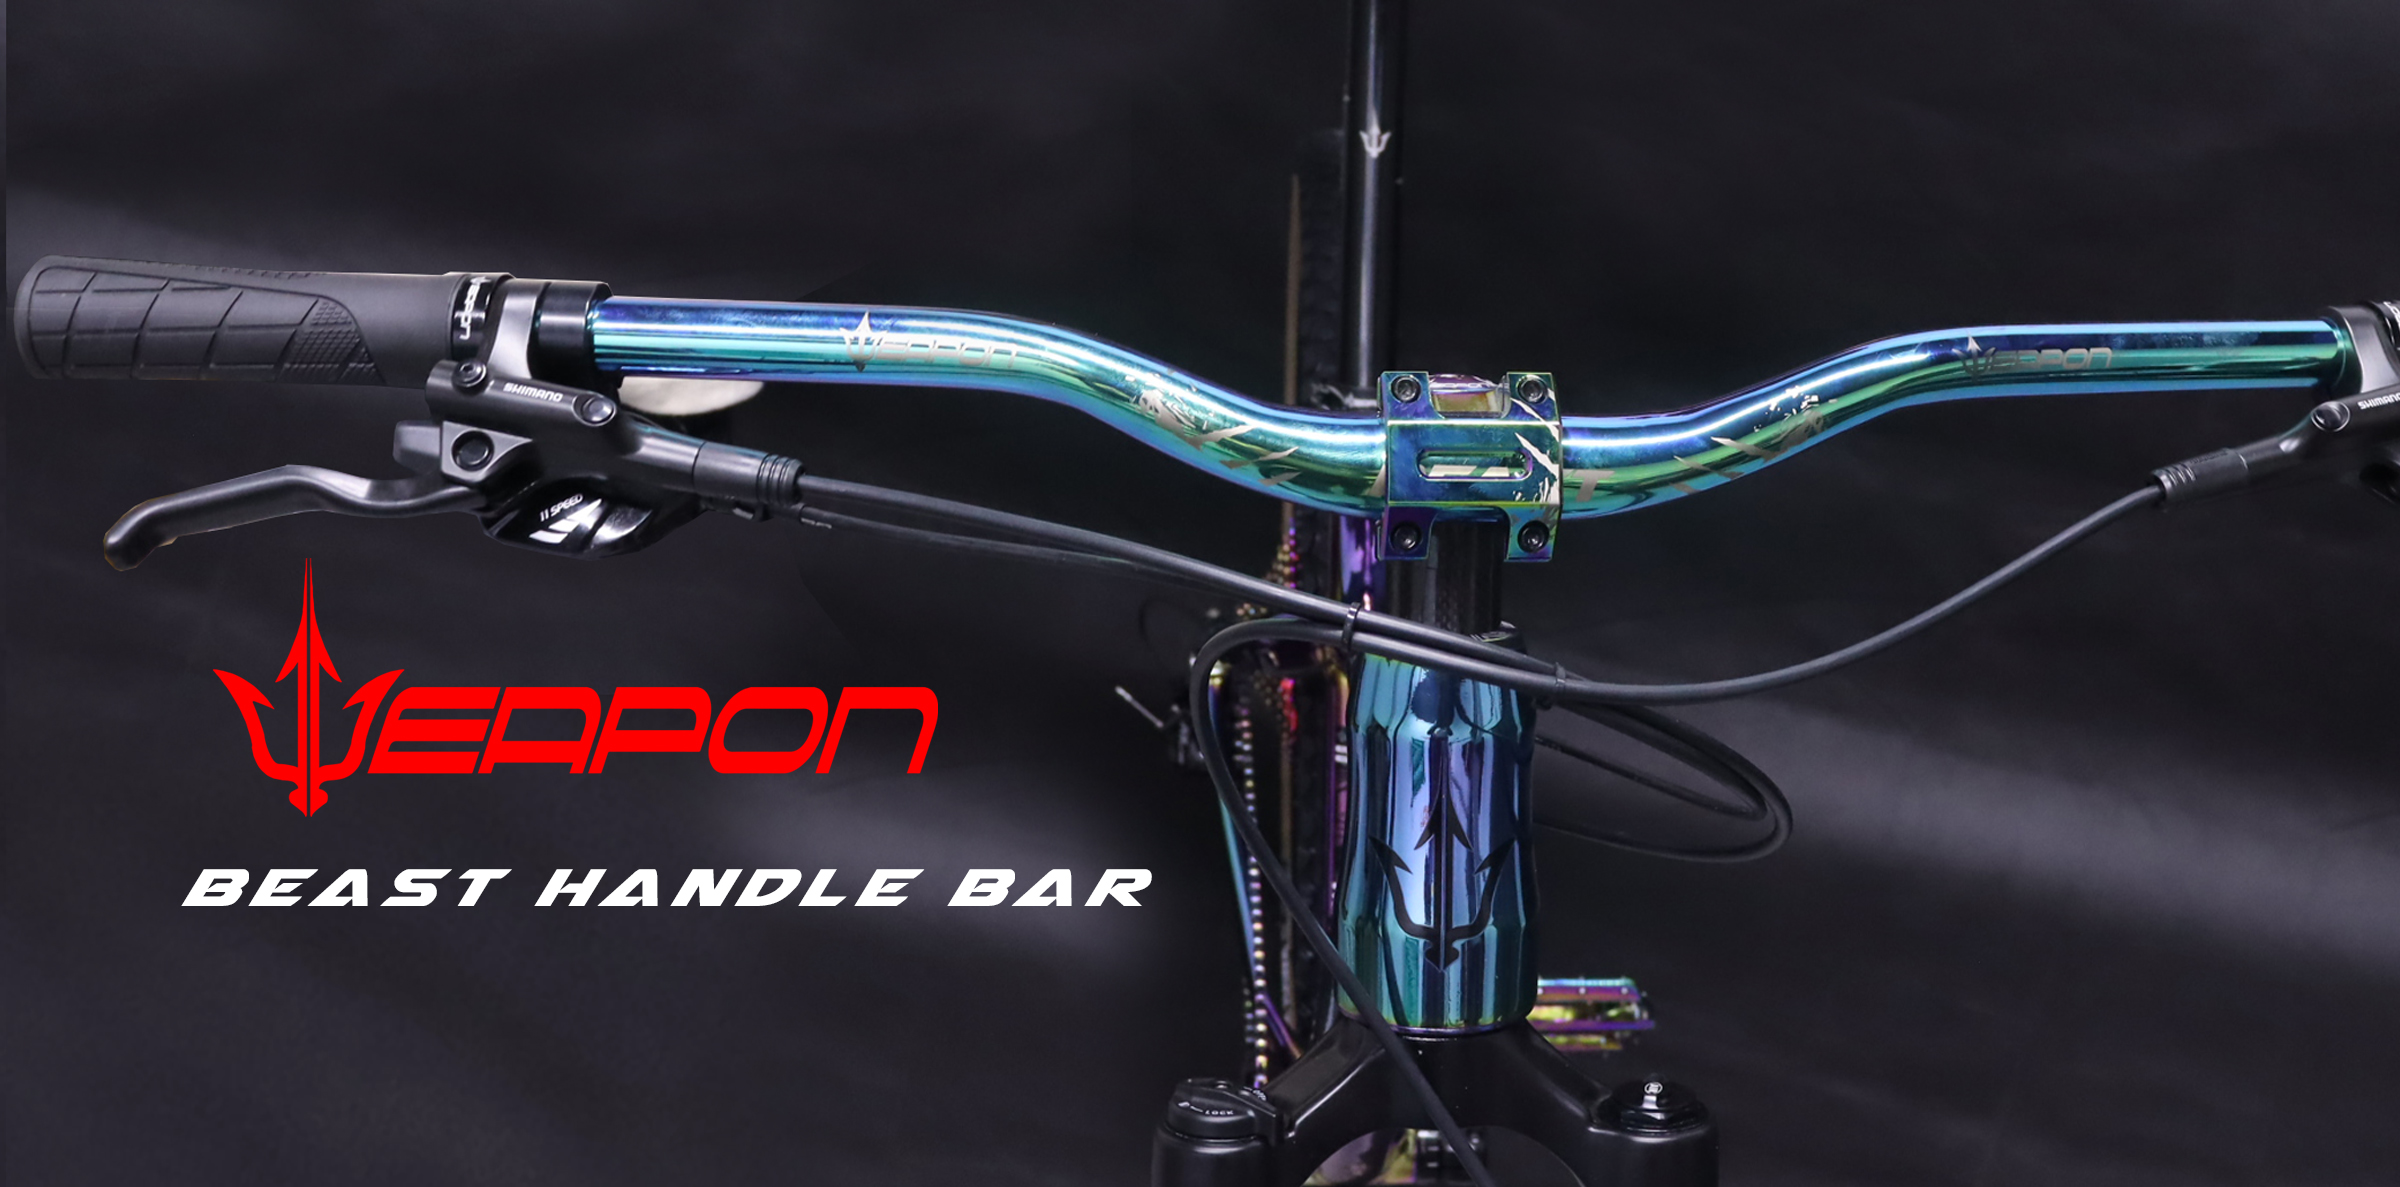 Beast Oil Slick Enduro Built Bike – Weapon Bike